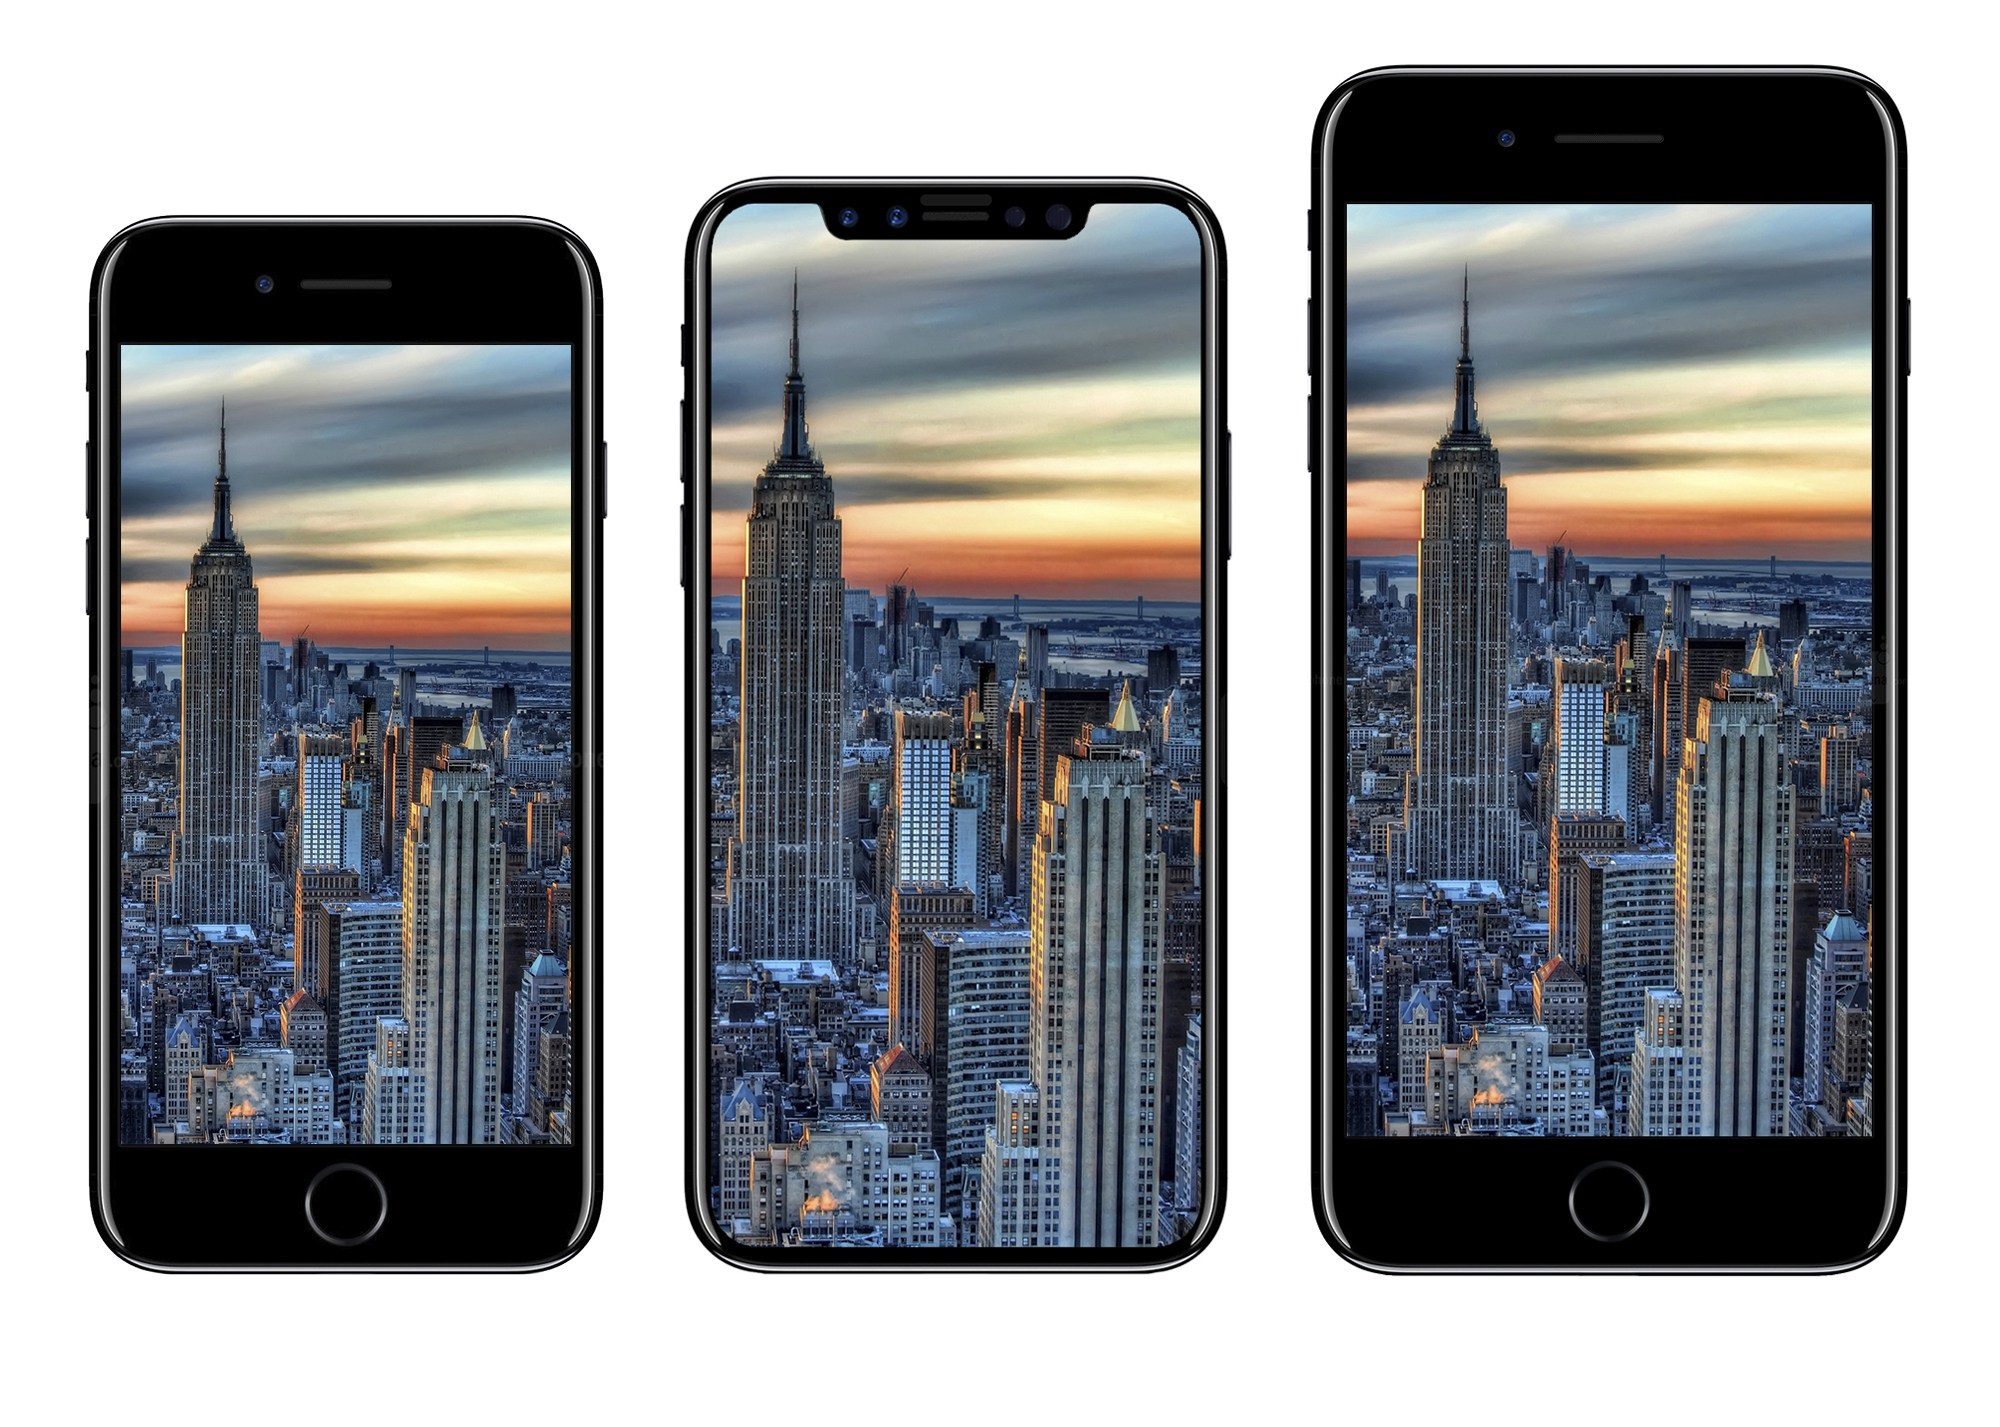 iPhone 8 concept comparison